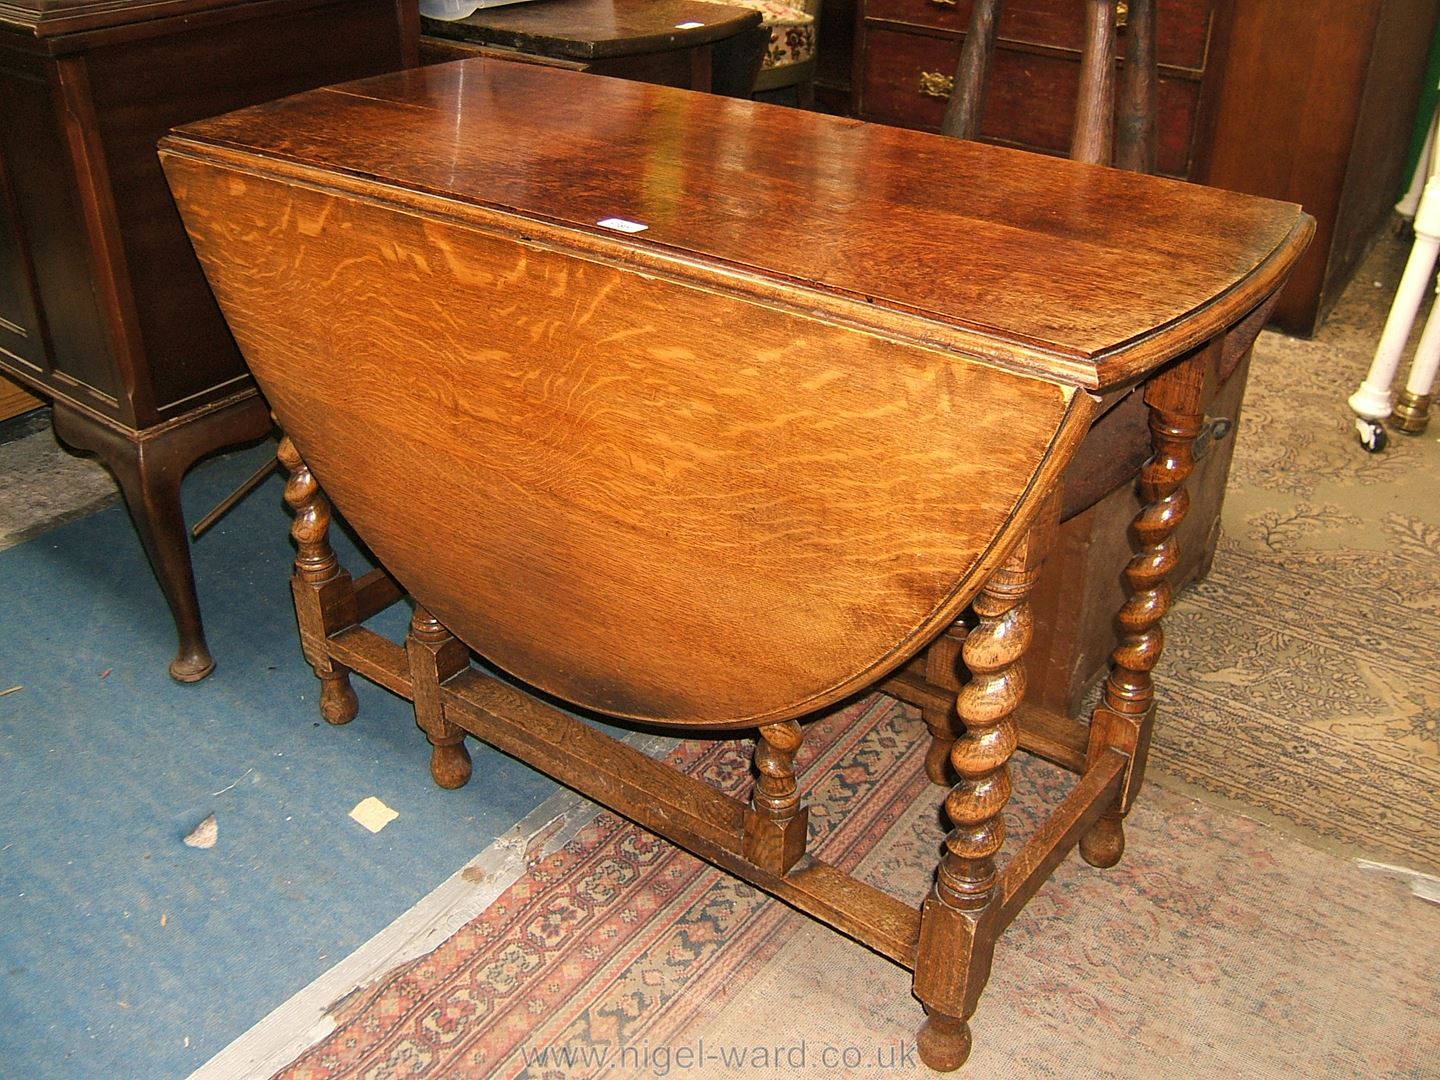 An Oak dropleaf Table with barley twist legs